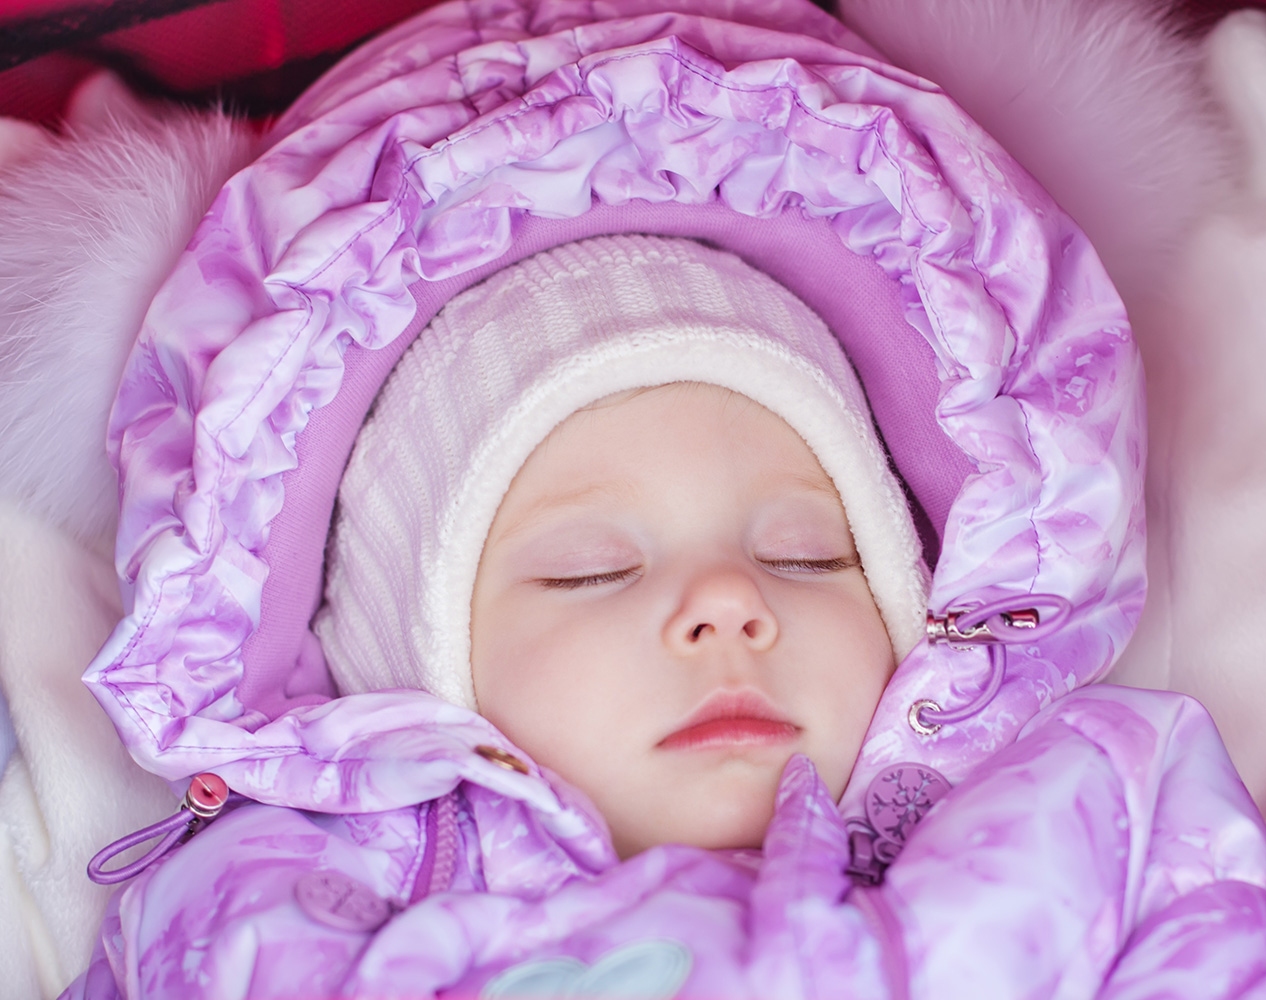 reservedele Bering strædet ulovlig Sover din baby udenfor? - Børn og Fritid